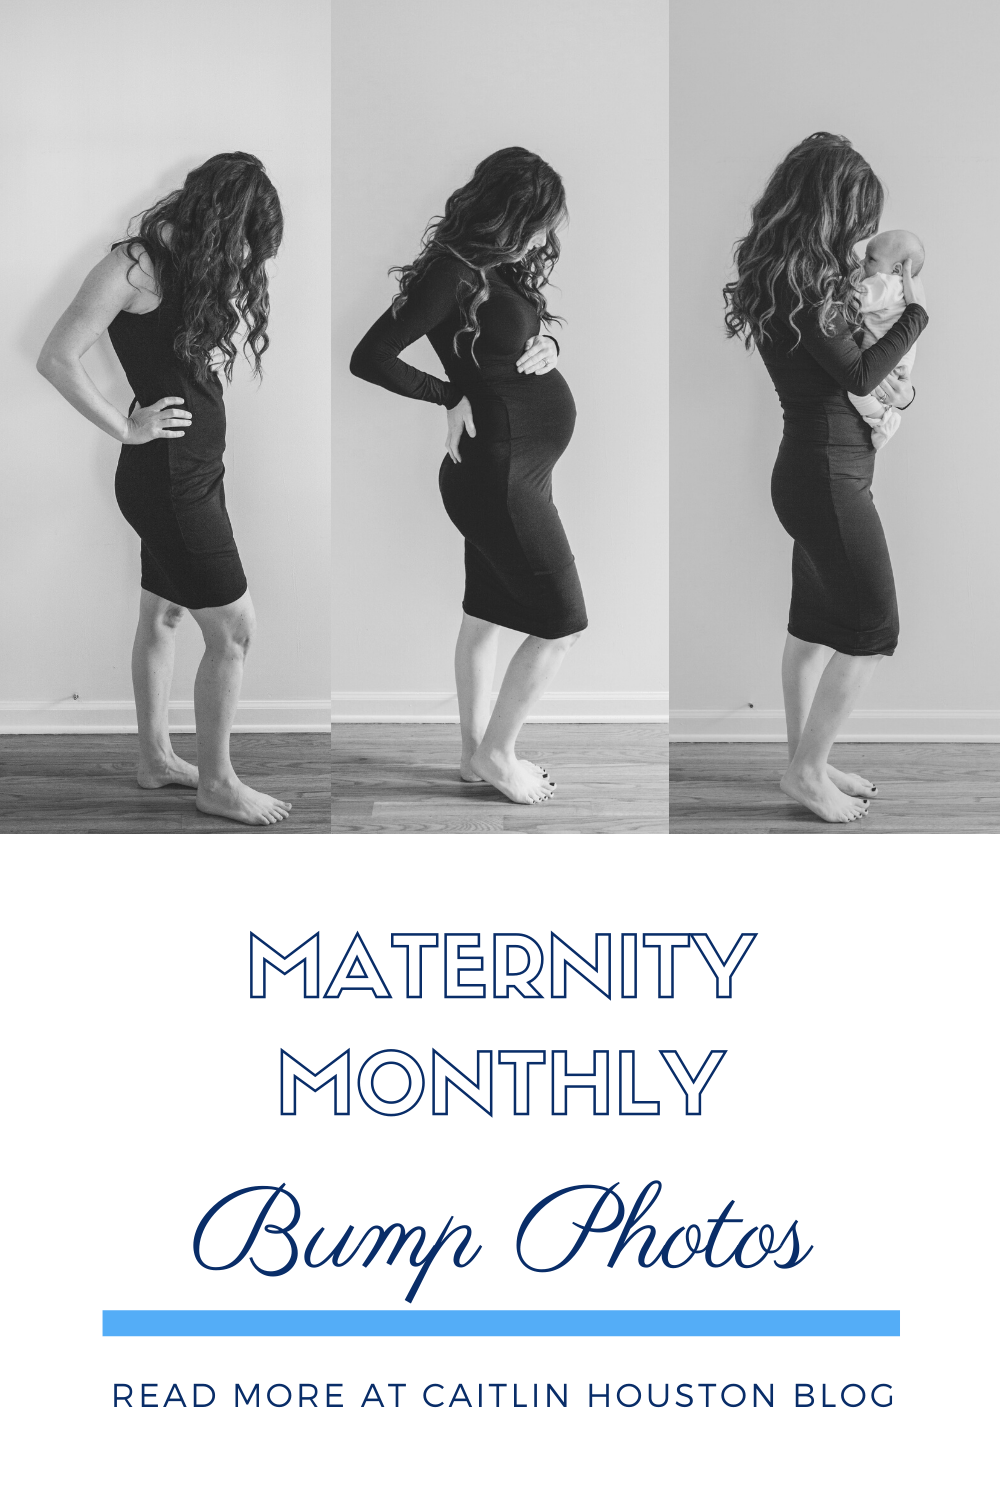 Monthly Maternity Bump Photos Caitlin Houston Blog